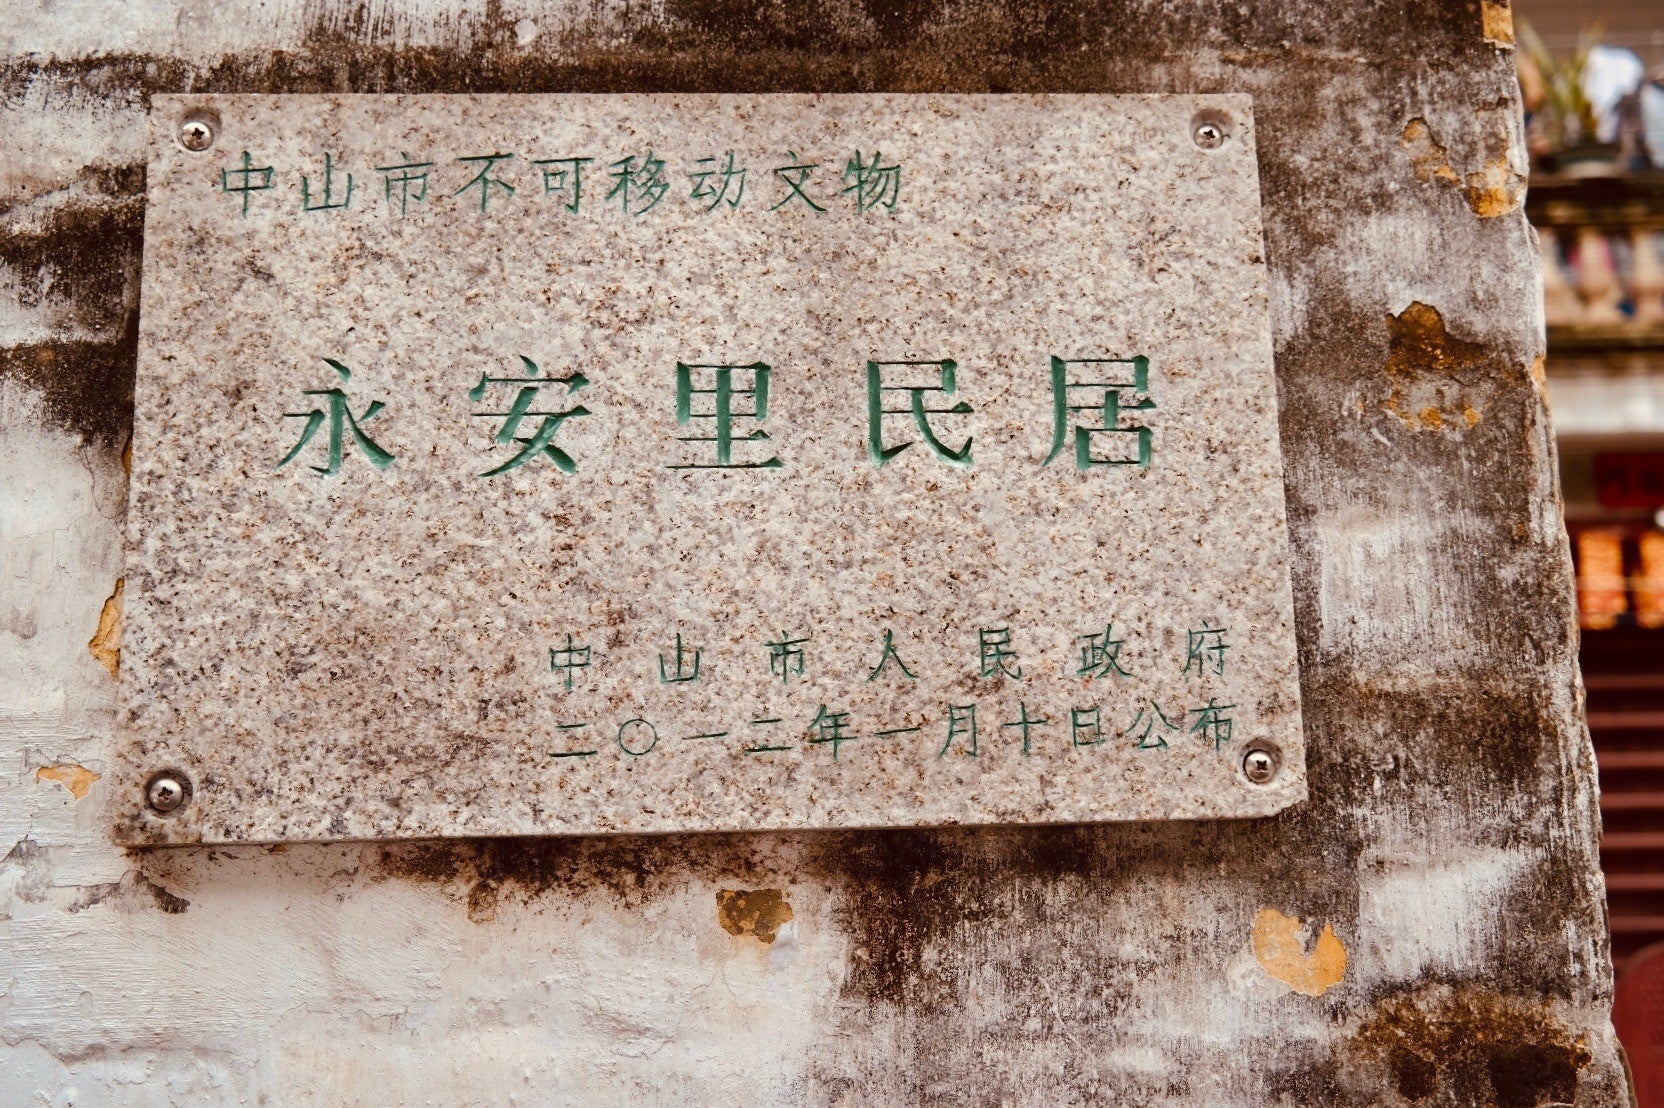 一块石牌上写着永安里民居于2012年列为中山市不可移动文物